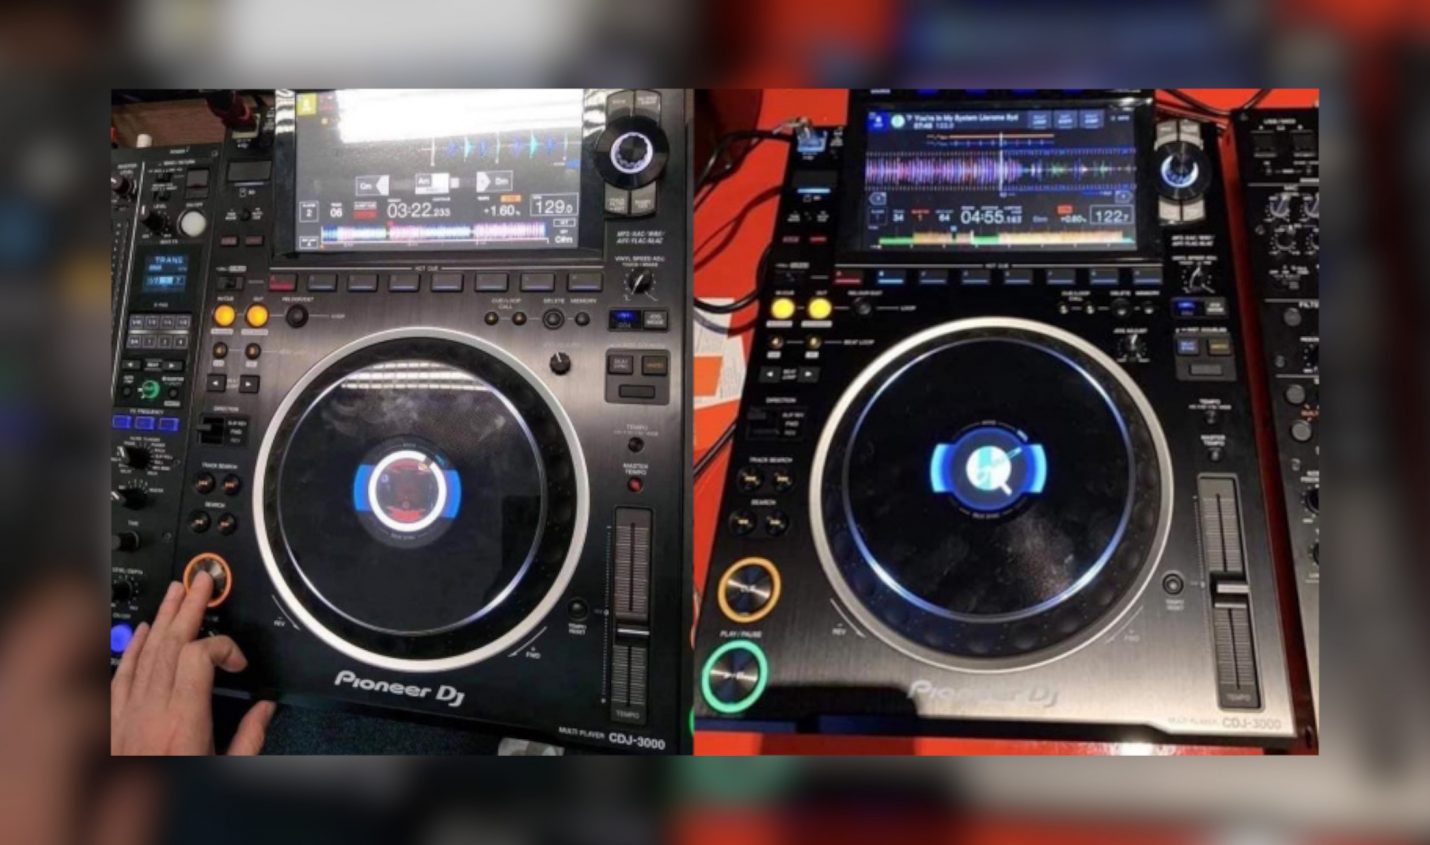 Leak: Bilder vom neuen Pioneer DJ CDJ-3000